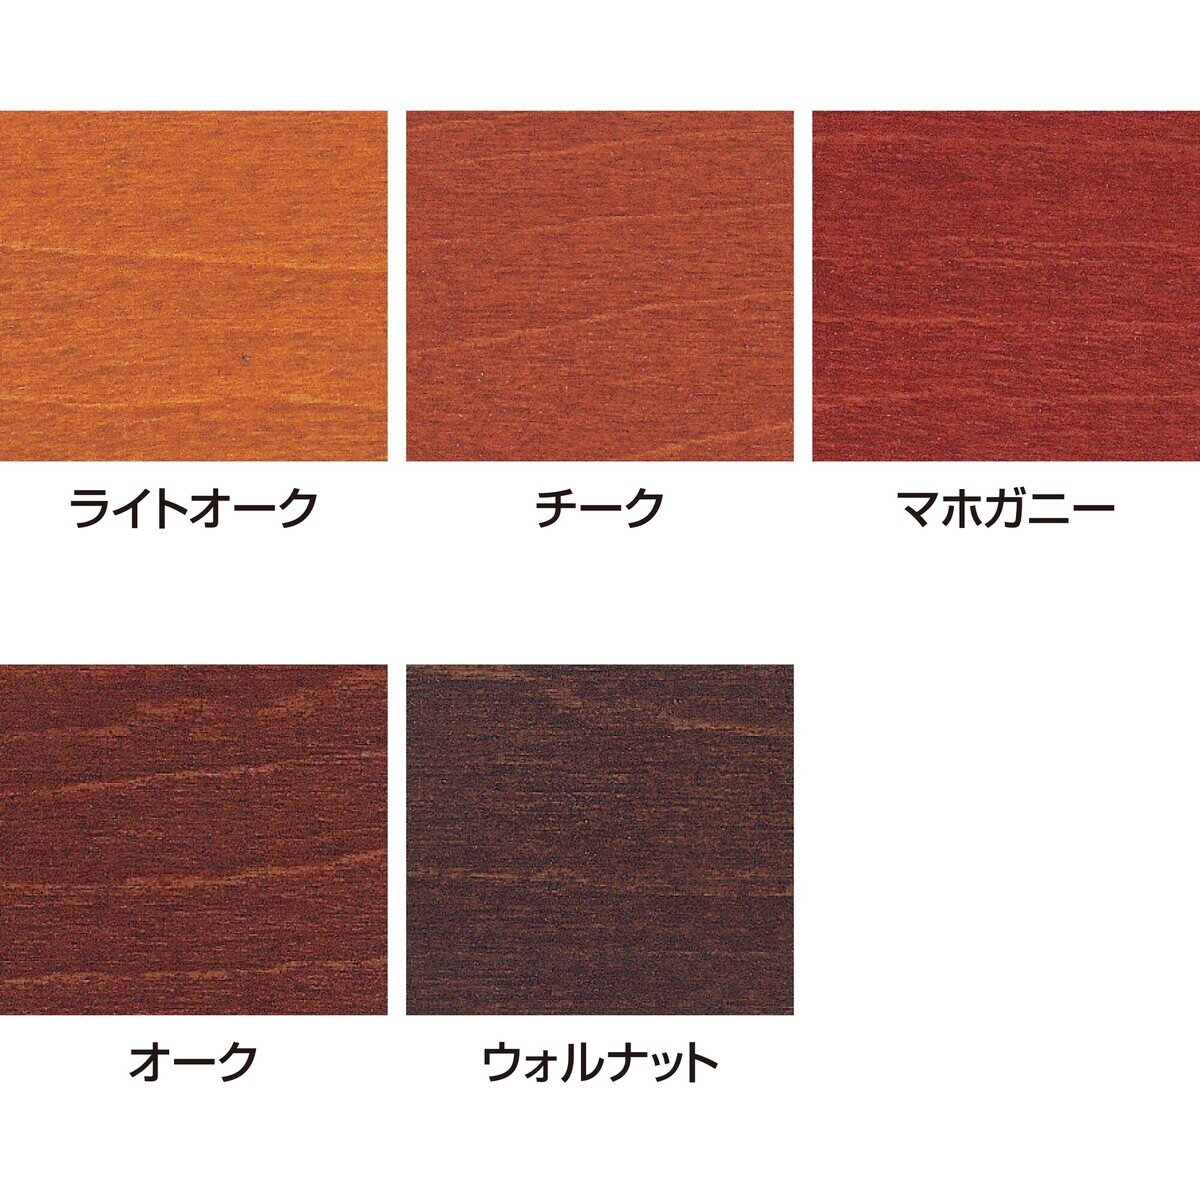 サンデーペイント 油性木部用塗料 カラーステイン 14L ライトオーク Costco Japan